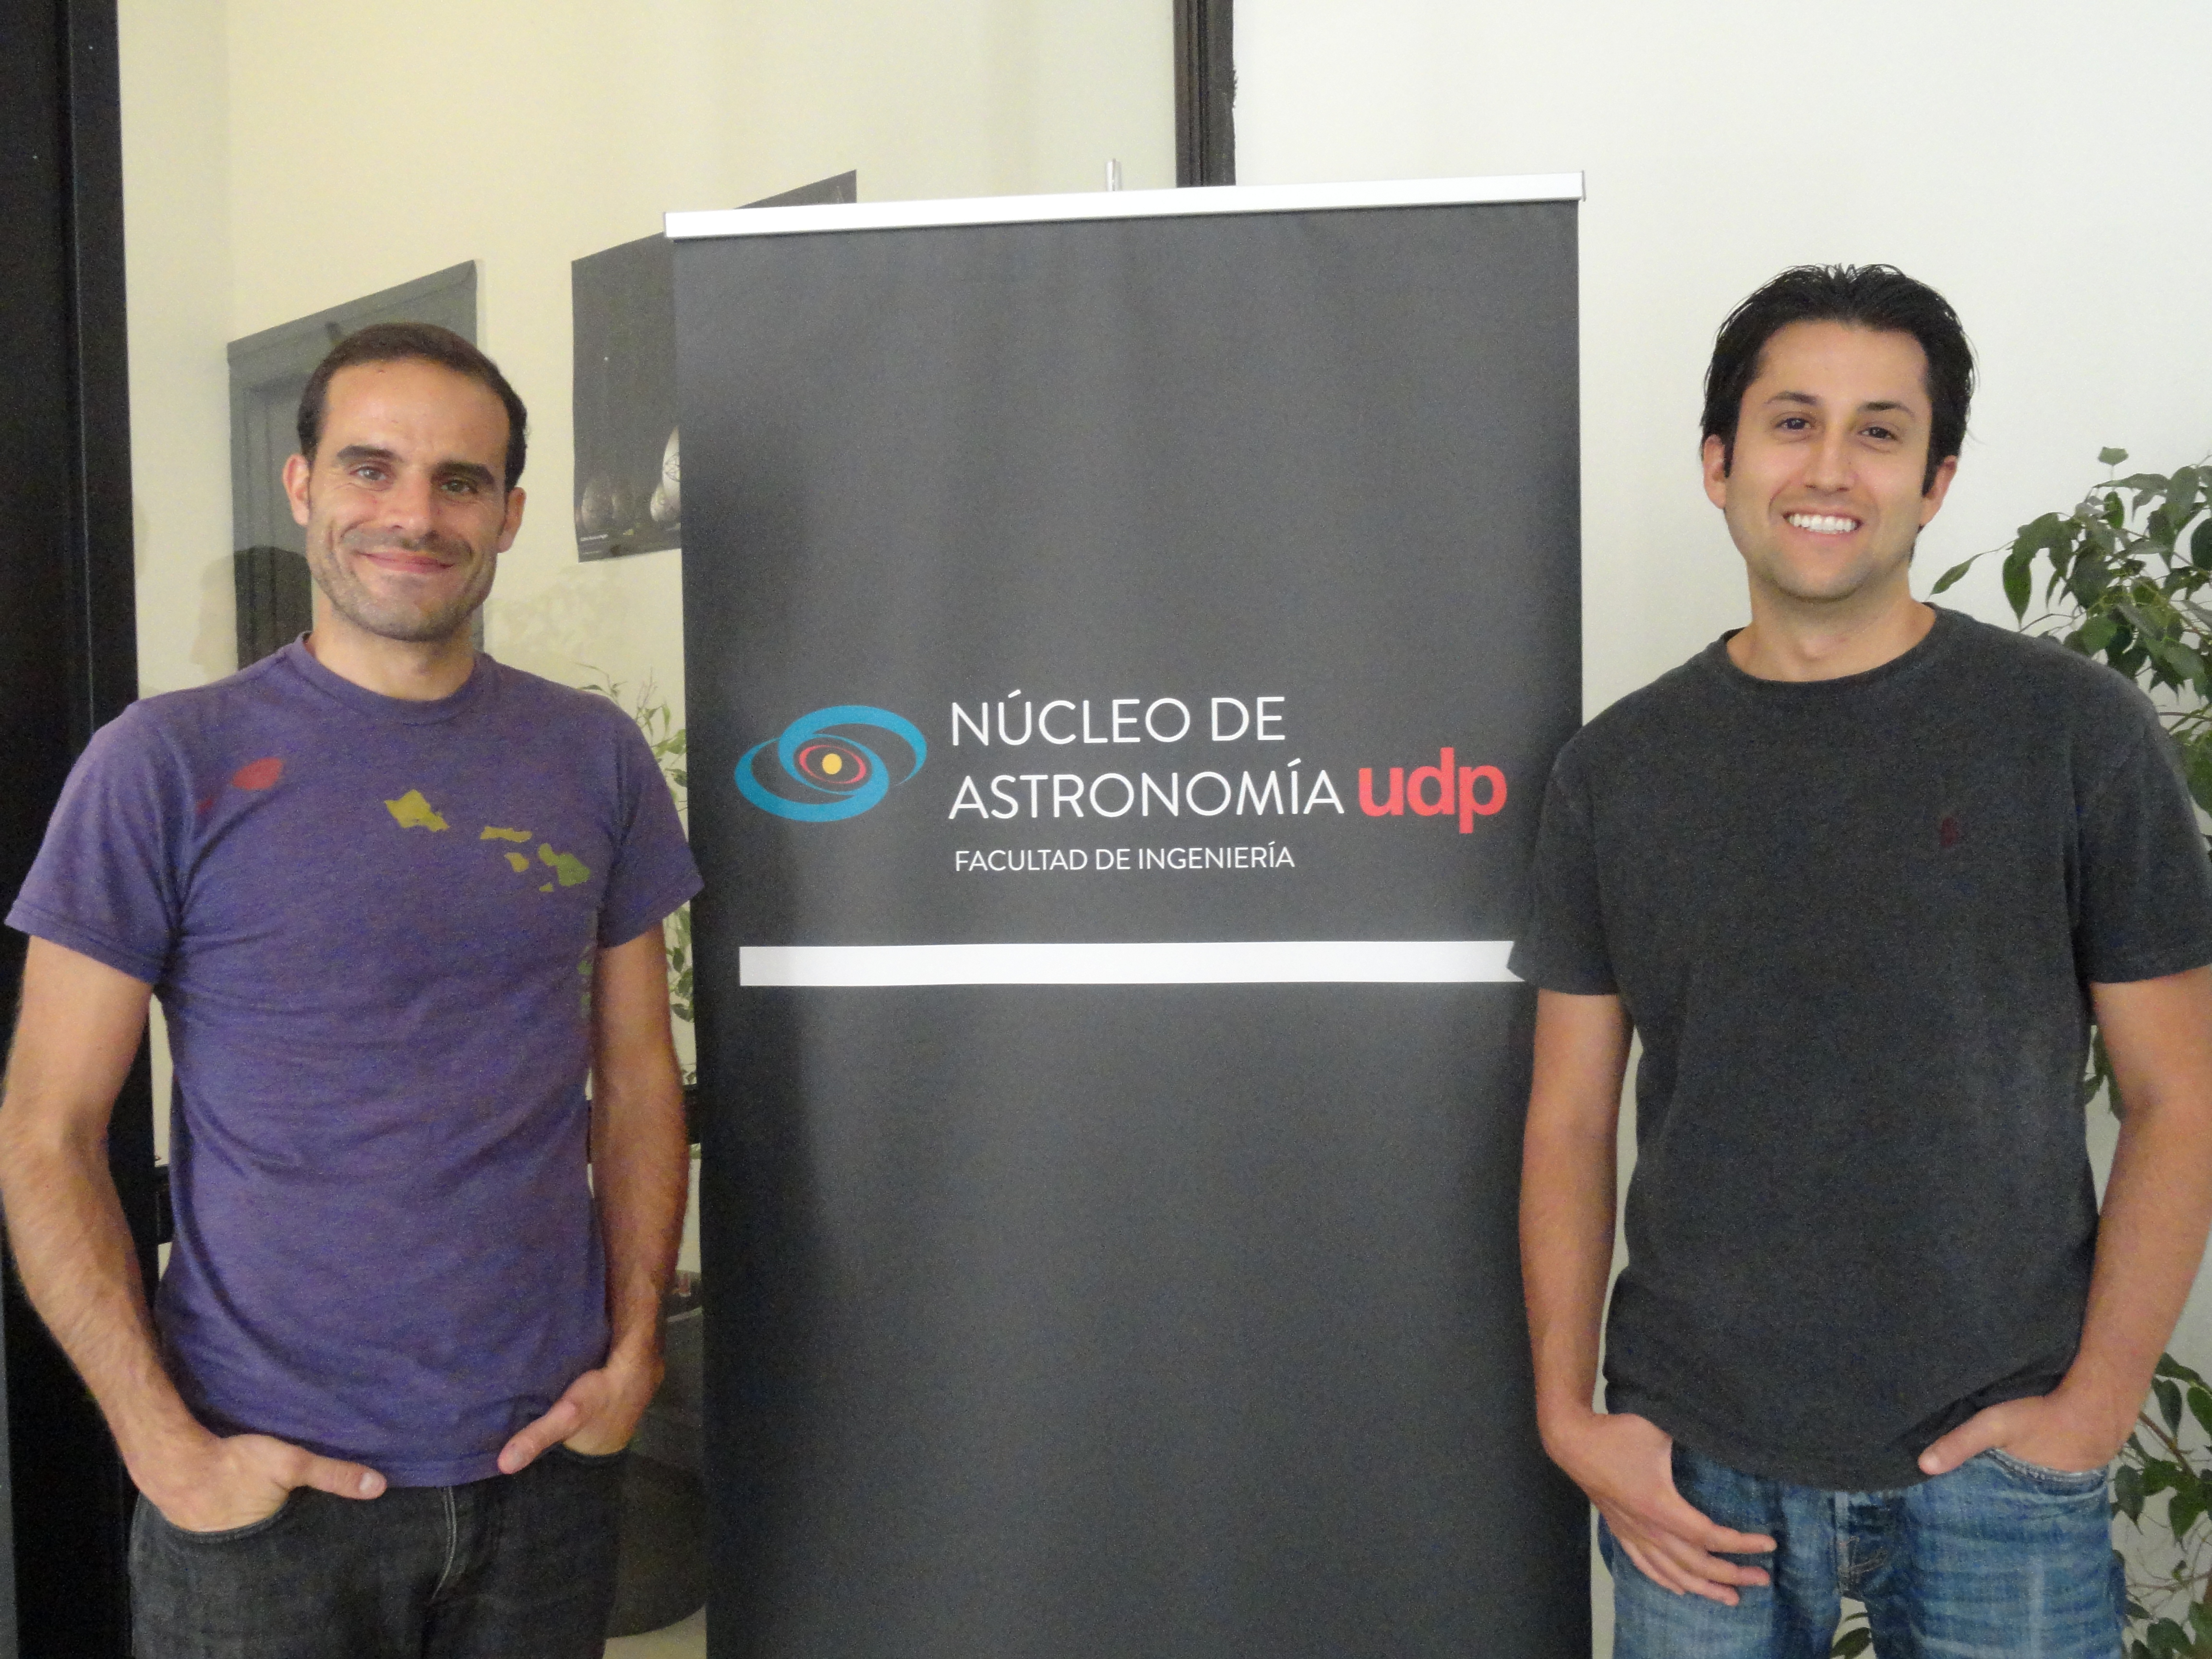 (Español) Nuevos investigadores se integran al Núcleo de Astronomía UDP